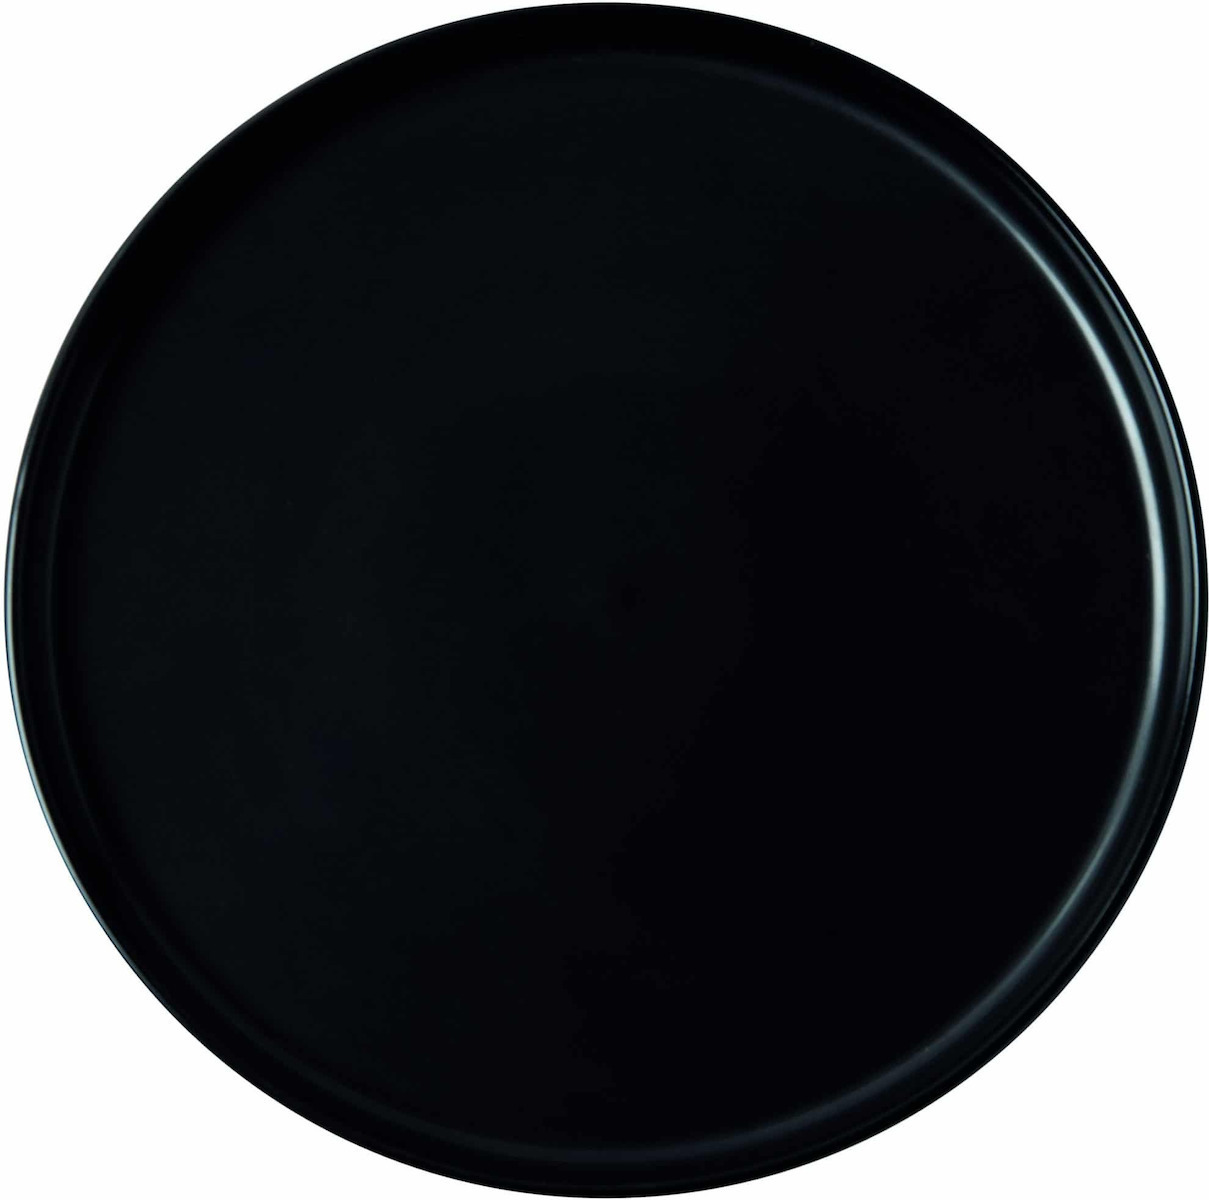 Πιάτο Ρηχό Στρογγυλό Πορσελάνη Μαύρο 27cm GTSA 66-4527